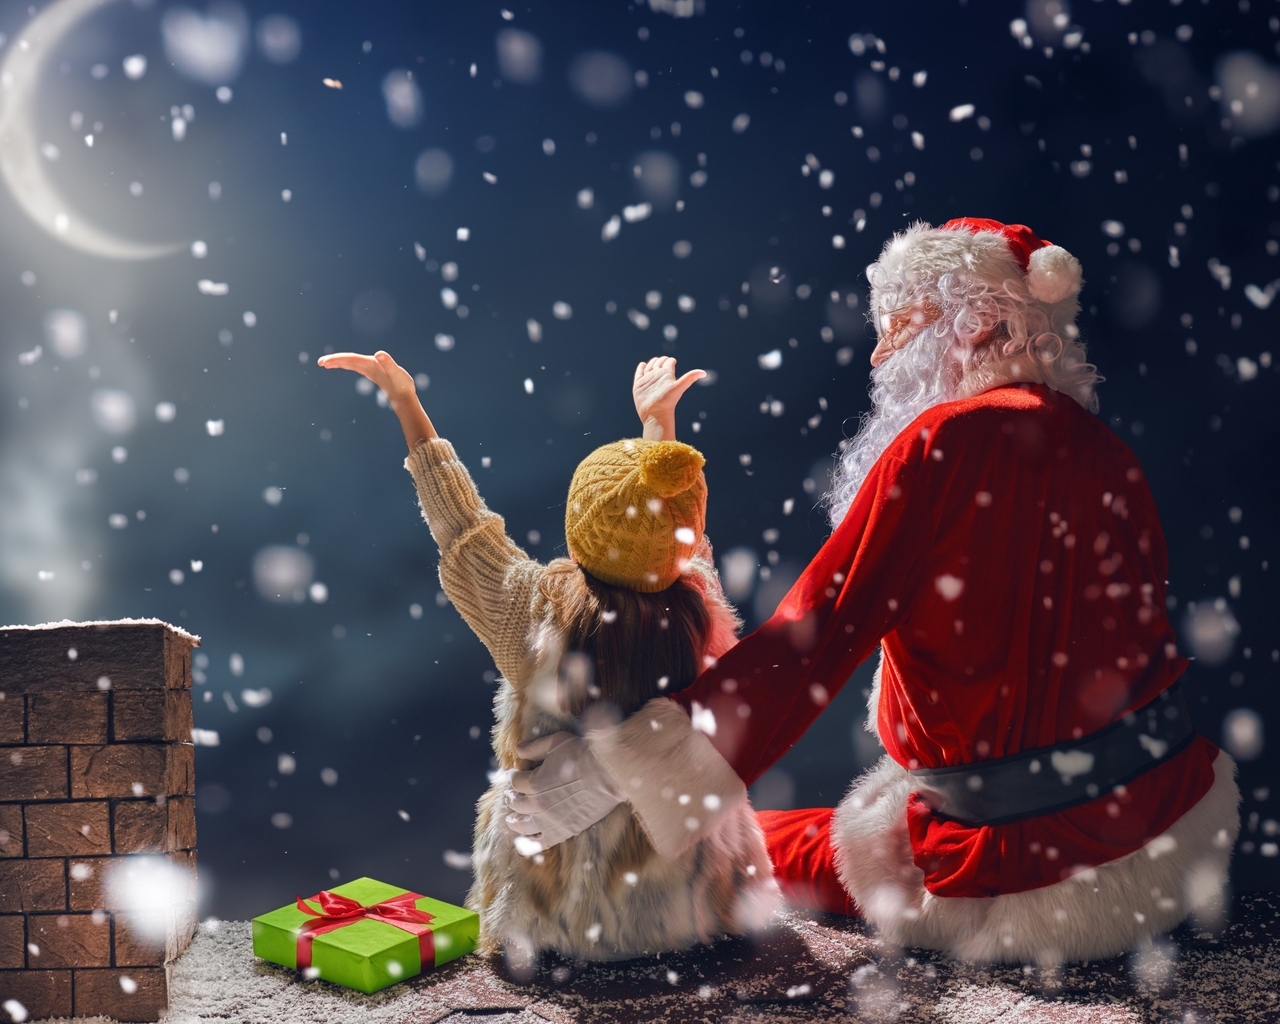 Картинка: Санта Клаус, девочка, подарок, Новый год, Рождество, труба, крыша